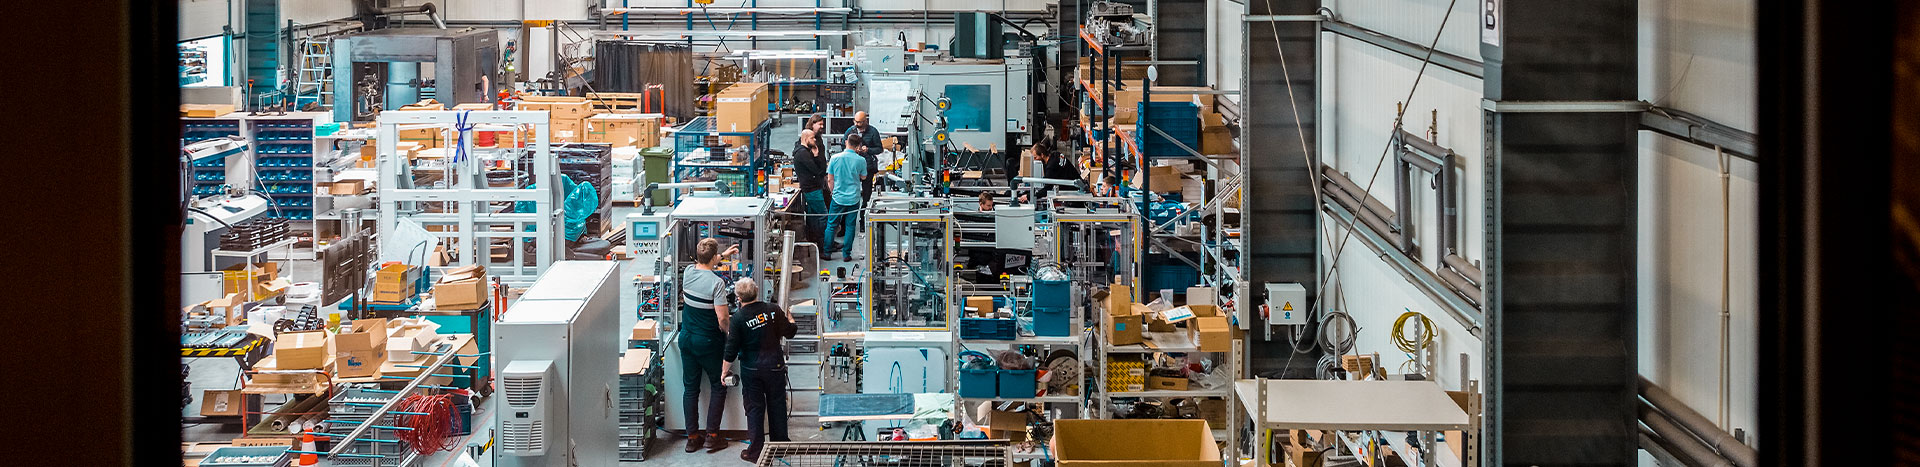 Fotografia przedstawia halę w firmie. Widoczne są maszyny i pracownicy.